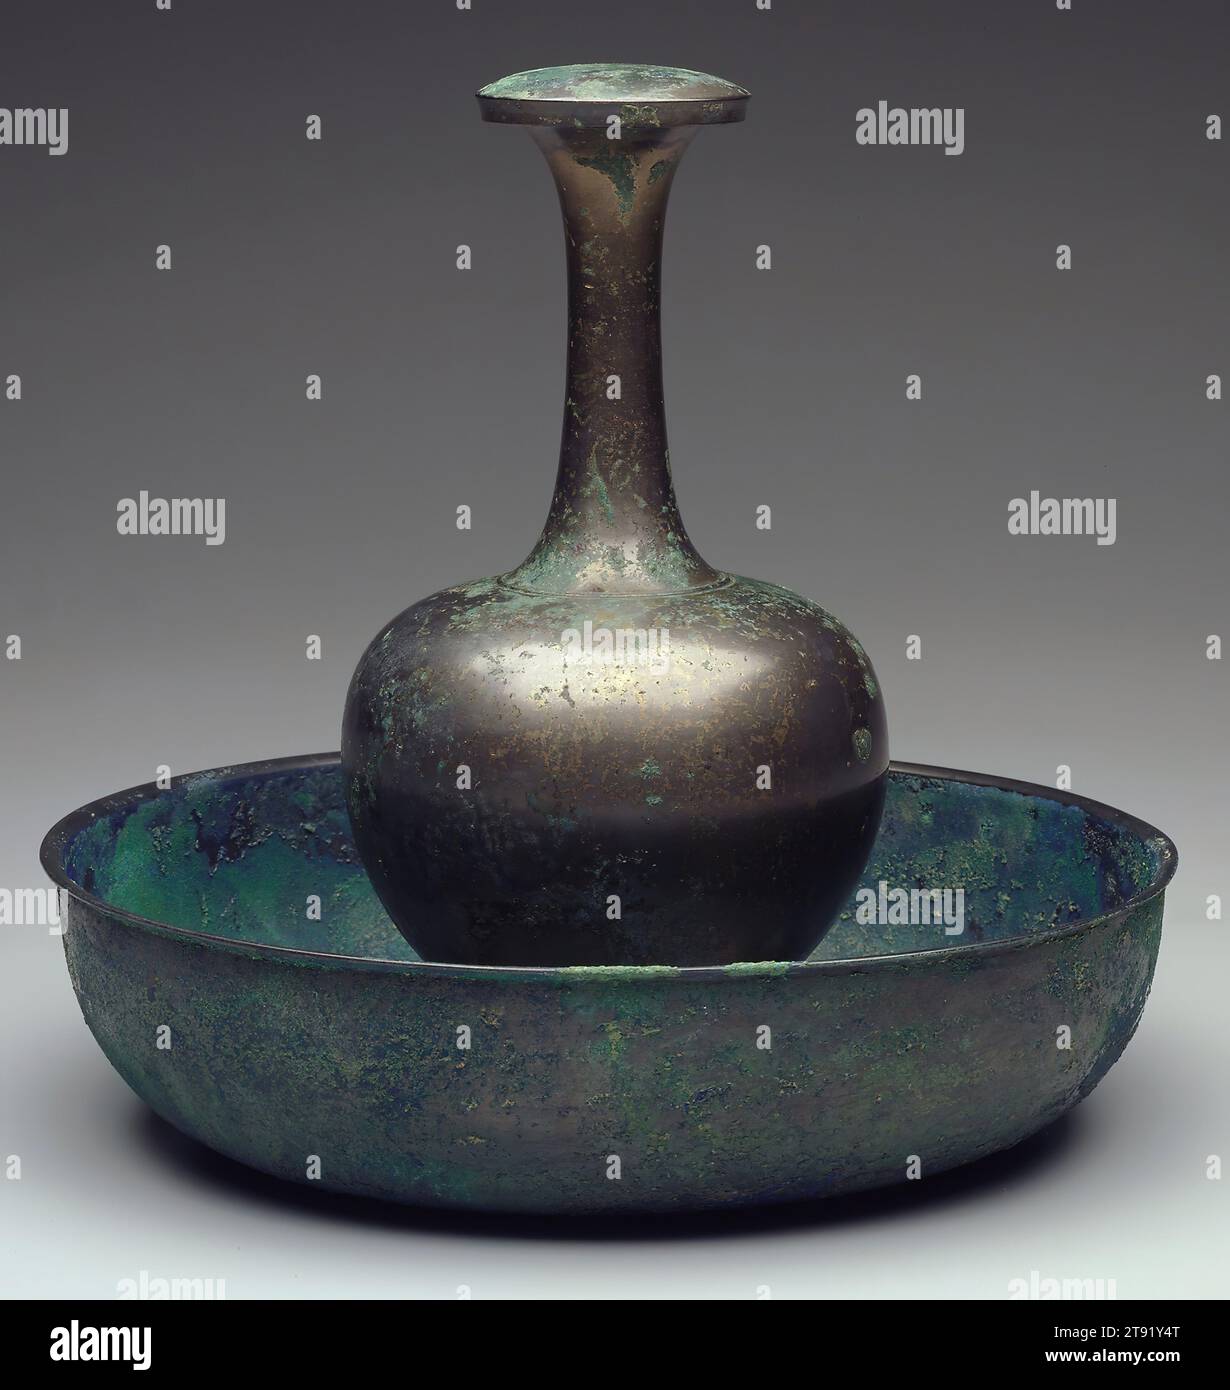 Vaso e coperchio per bottiglia buddista rituale, VII-VIII secolo, 8 3/16 x 1/4 cm (20,8 x 10,8 cm) (vaso senza coperchio), Bronzo, Cina, VII-VIII secolo, realizzato per rituali buddisti, questo vaso in bottiglia con coperchio finemente rifinito, elegantemente proporzionato, può essere associato al bodhisattva Guanyin (Avalokitesvara). Chiamato vaso ambrosia, è il tipo trasportato da Guanyin e si dice che porti l'elisir che conforta i mortali che cercano la salvezza Foto Stock